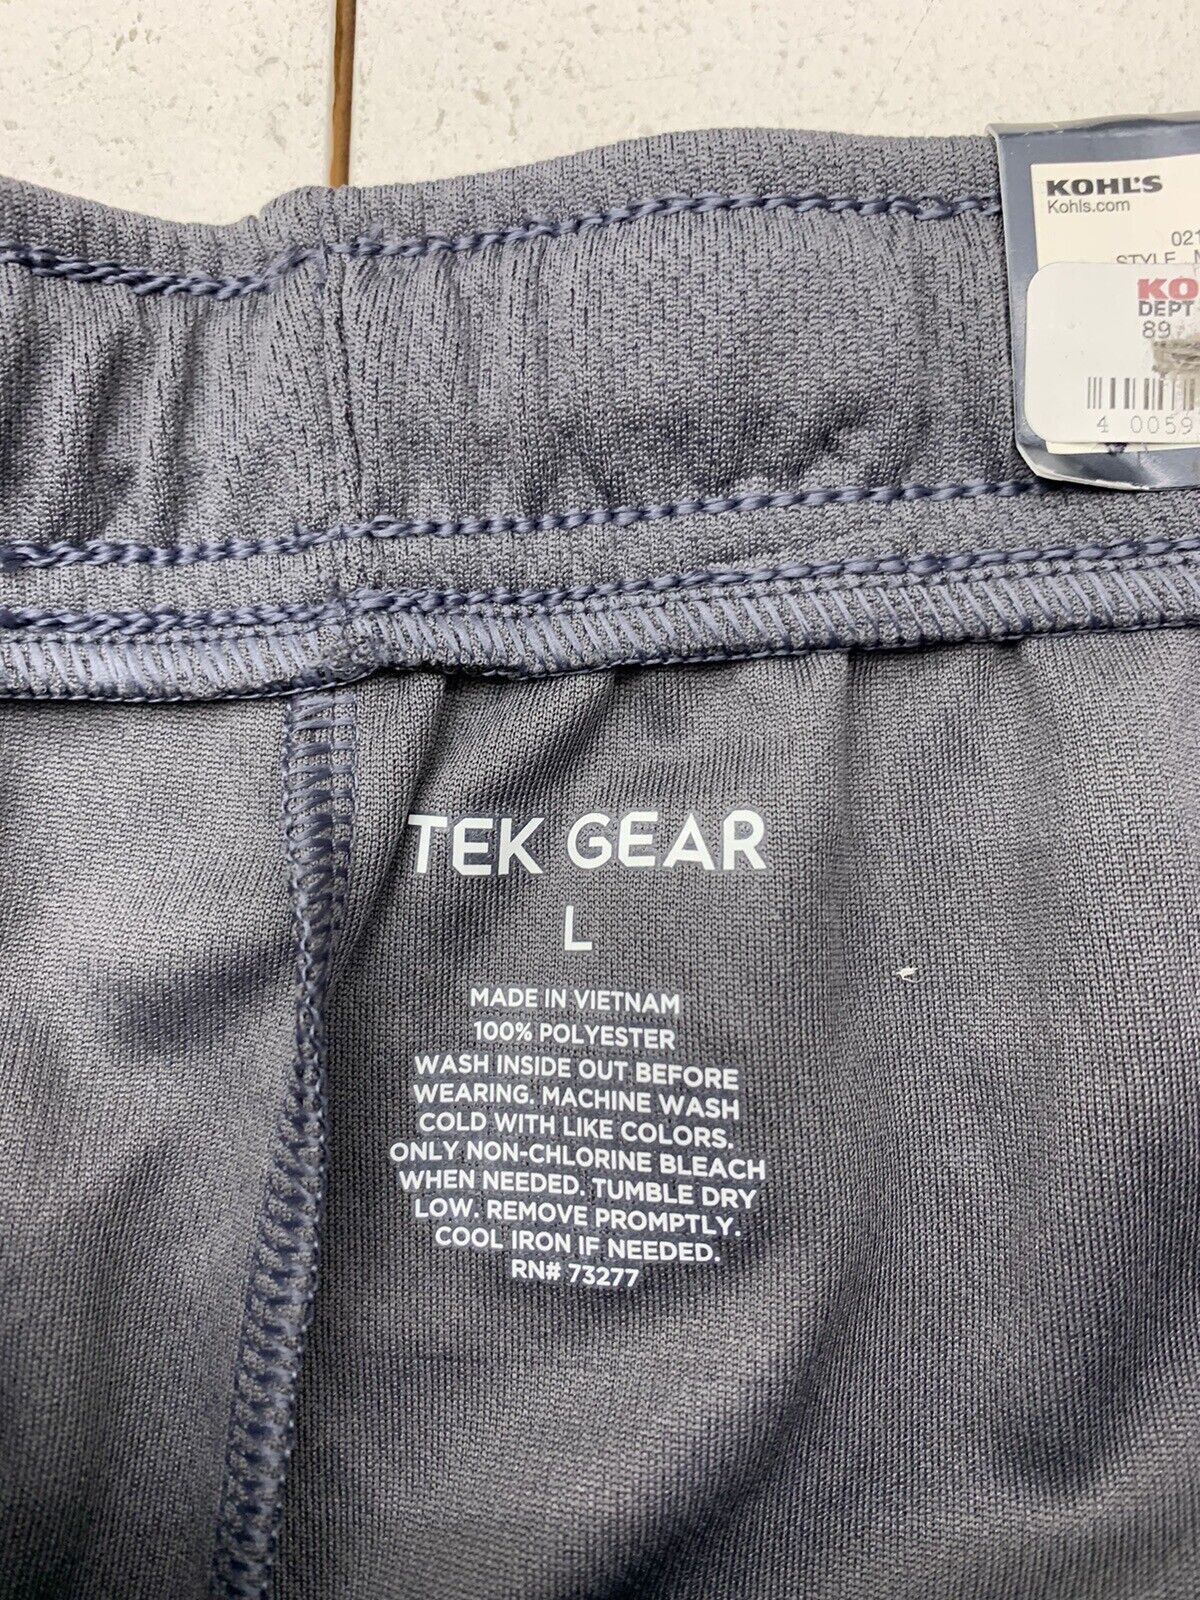 Tek Gear Mens Grey Mesh Athletic Shorts Size Large - beyond exchange